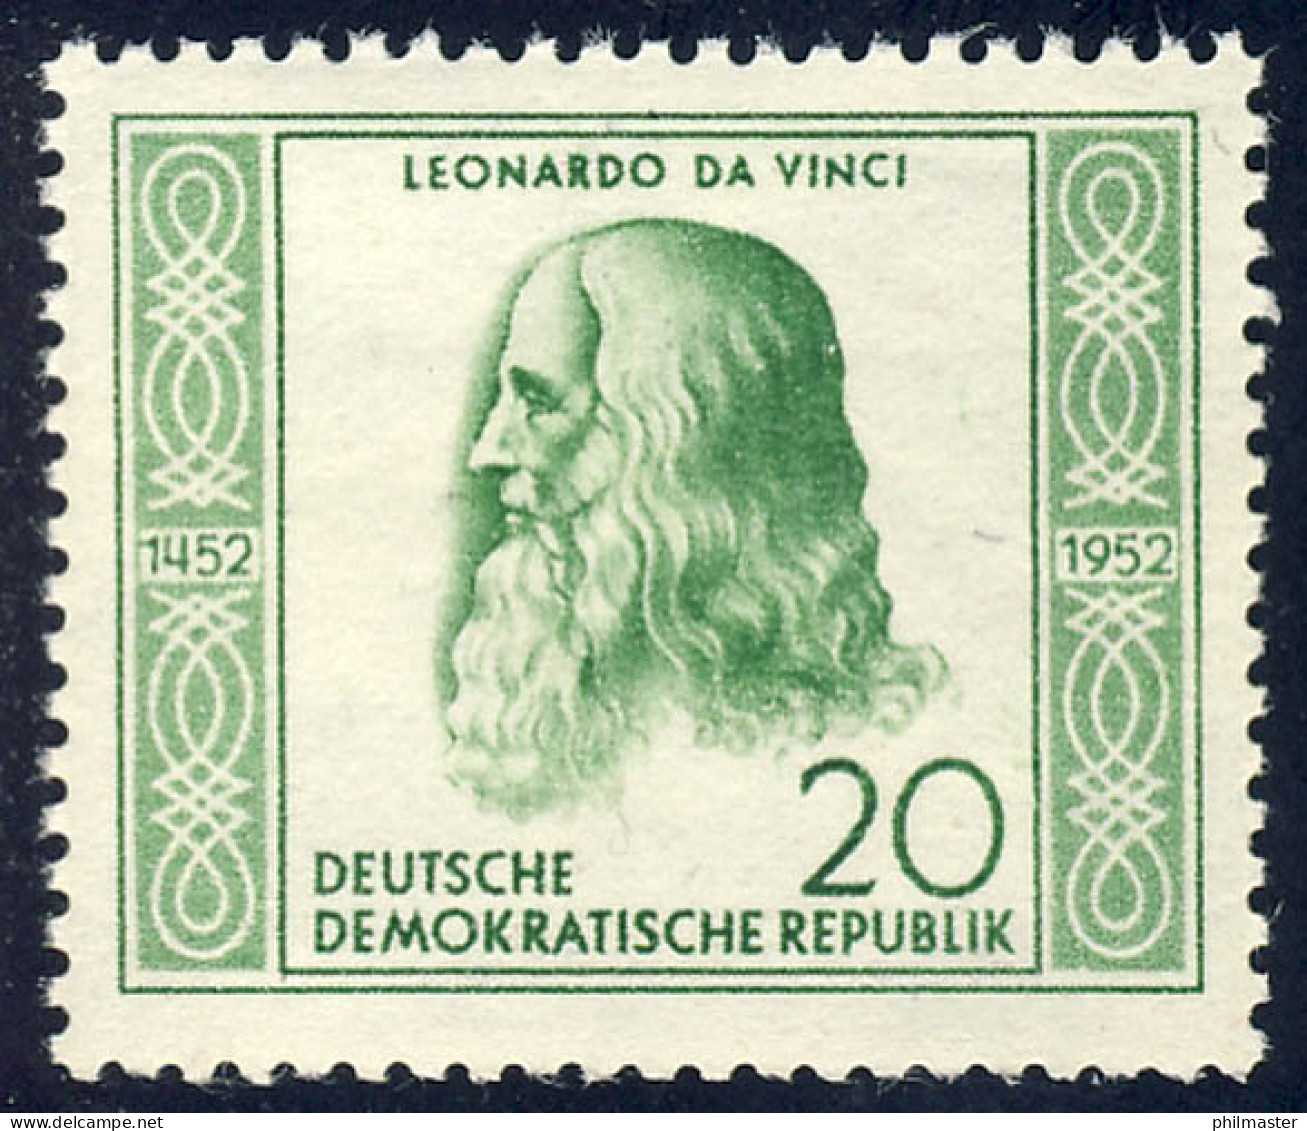 312 Leonardo Da Vinci 20 Pf ** - Unused Stamps